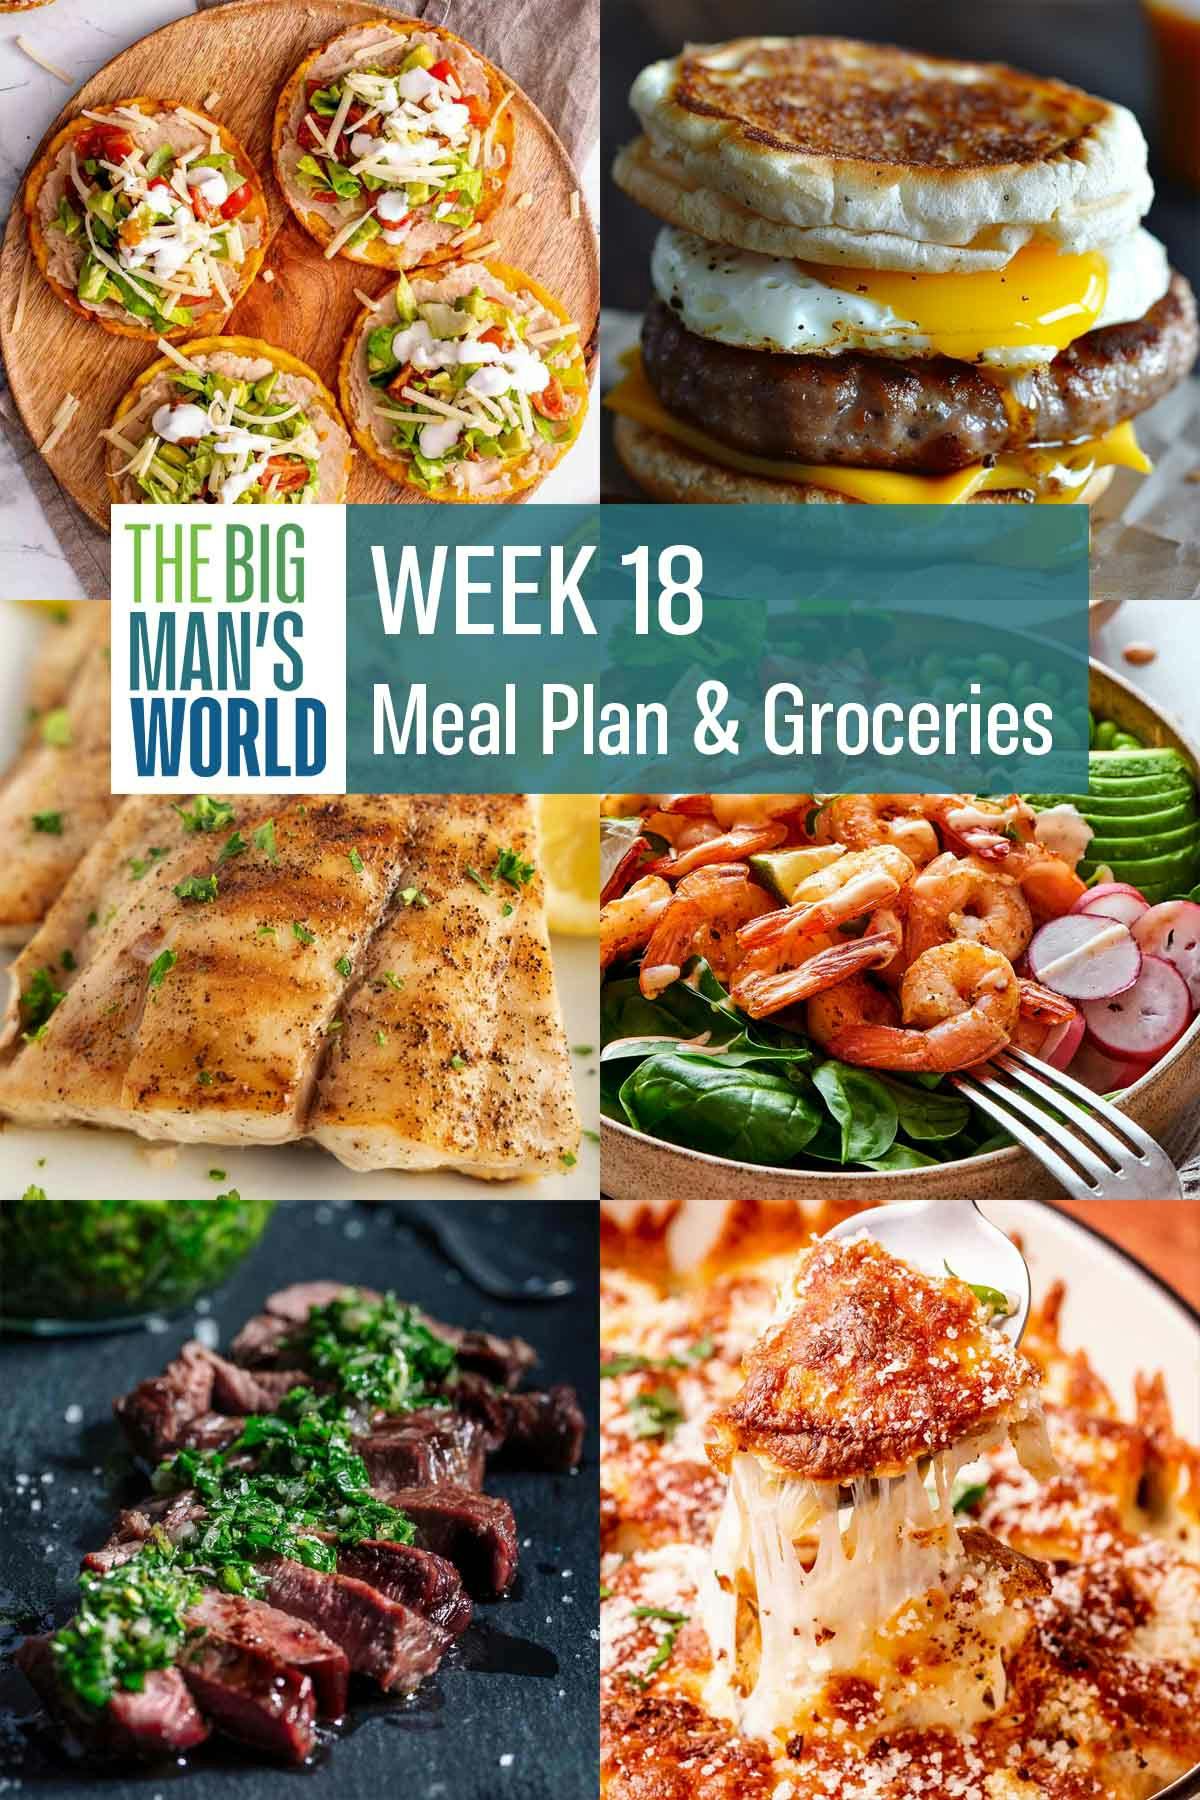 Week 18 Meal Plan & Groceries